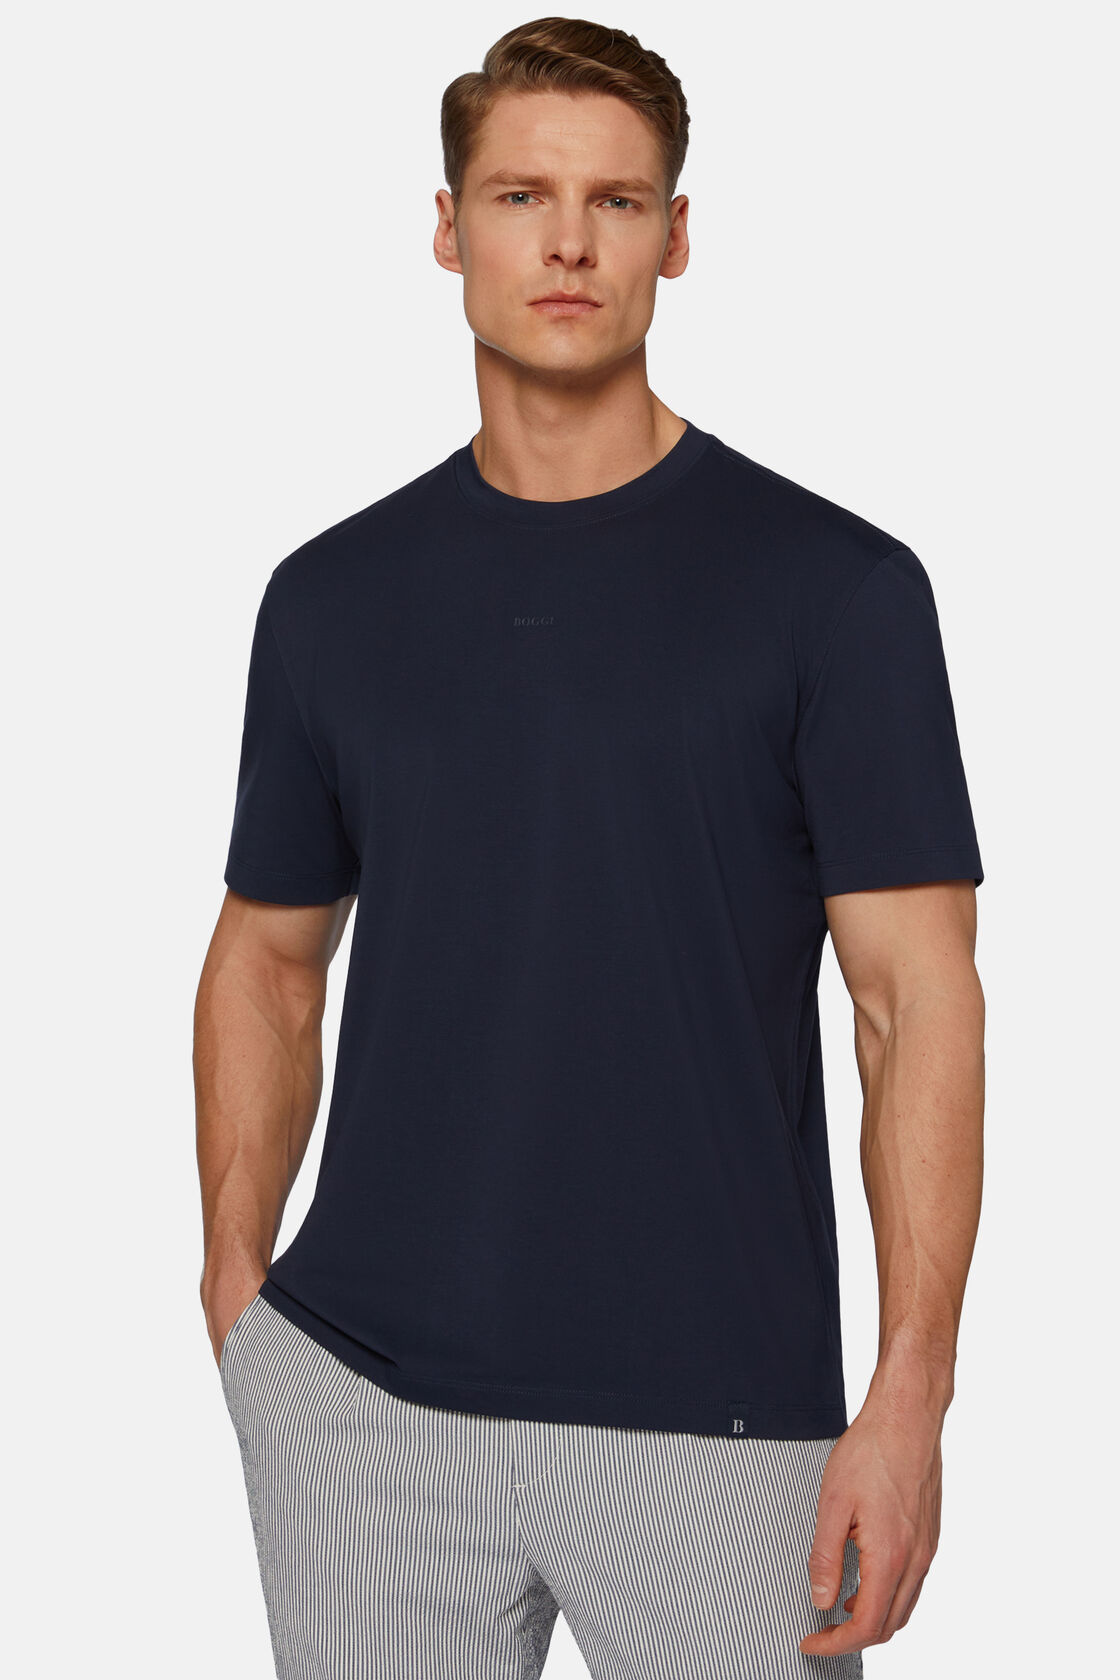 Μπλουζάκι από ελαστικό βαμβάκι Supima, Navy blue, hi-res